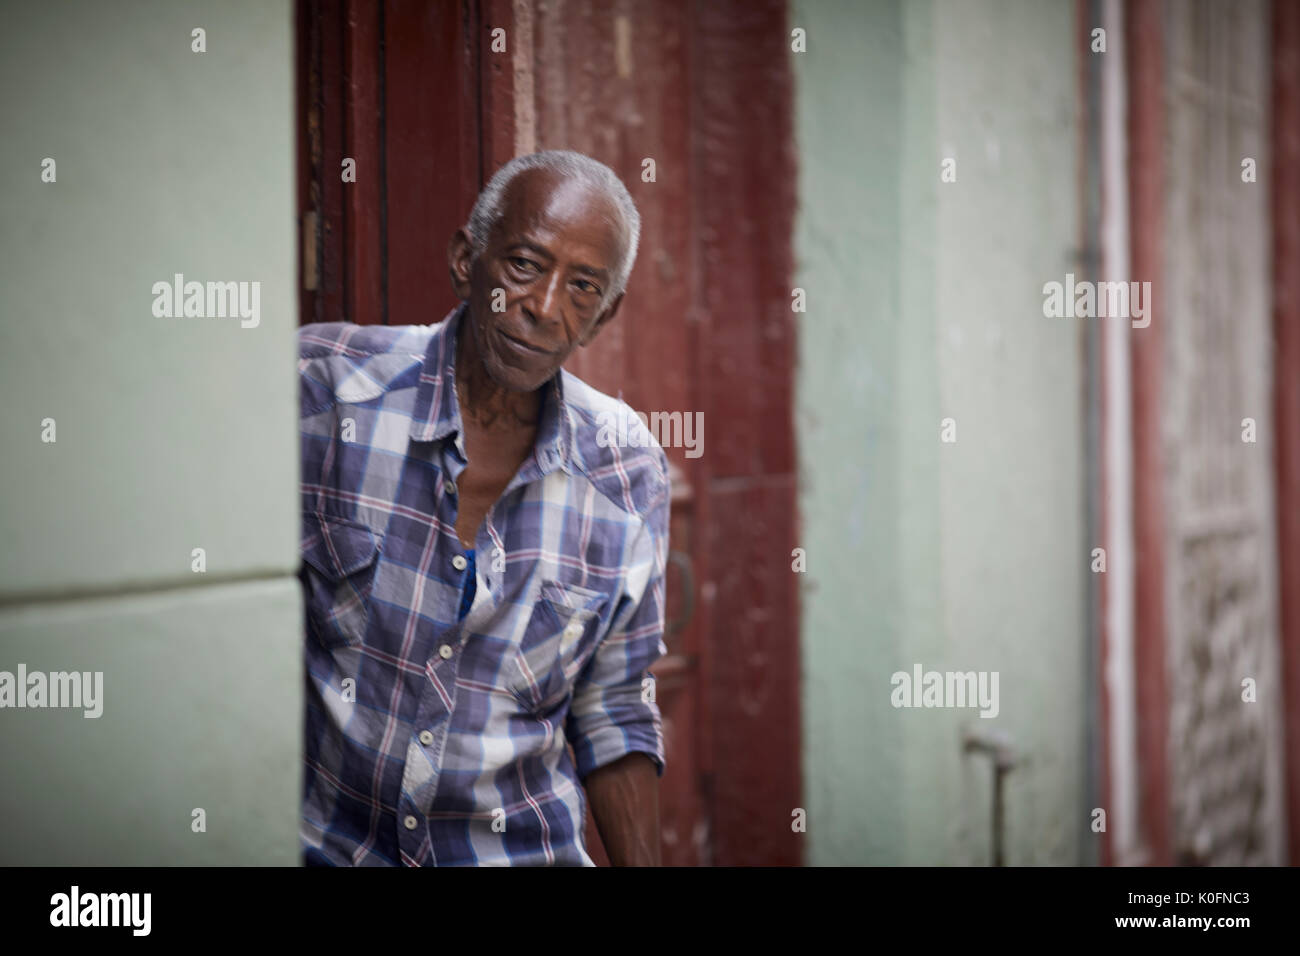 Cubano, Cuba, capitale, Havana tipica strada stretta con gli appartamenti una coppia maschio nero guarda fuori forma una porta Foto Stock